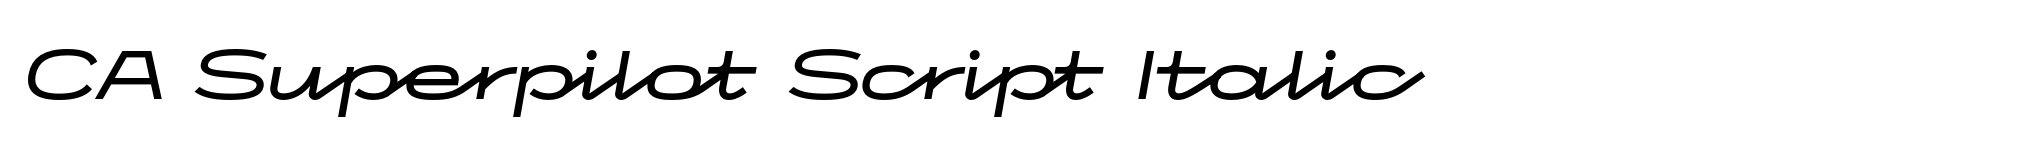 CA Superpilot Script Italic image